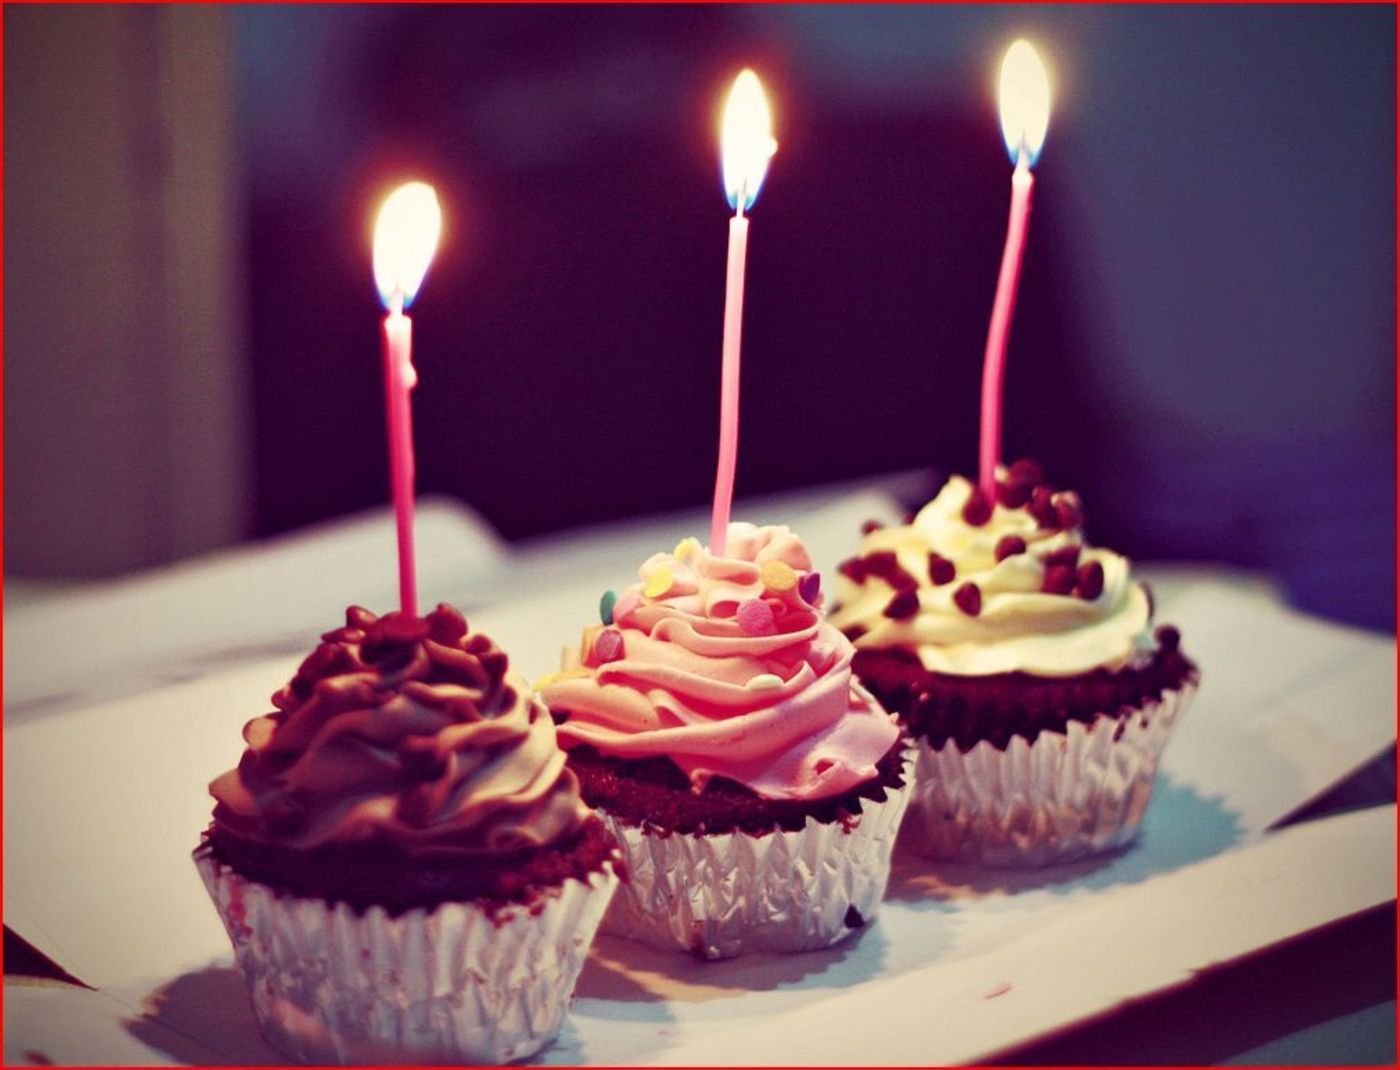 C f b day. Тортик со свечками. Свечи для торта. Пирожное на день рождения. Кексики на день рождения.